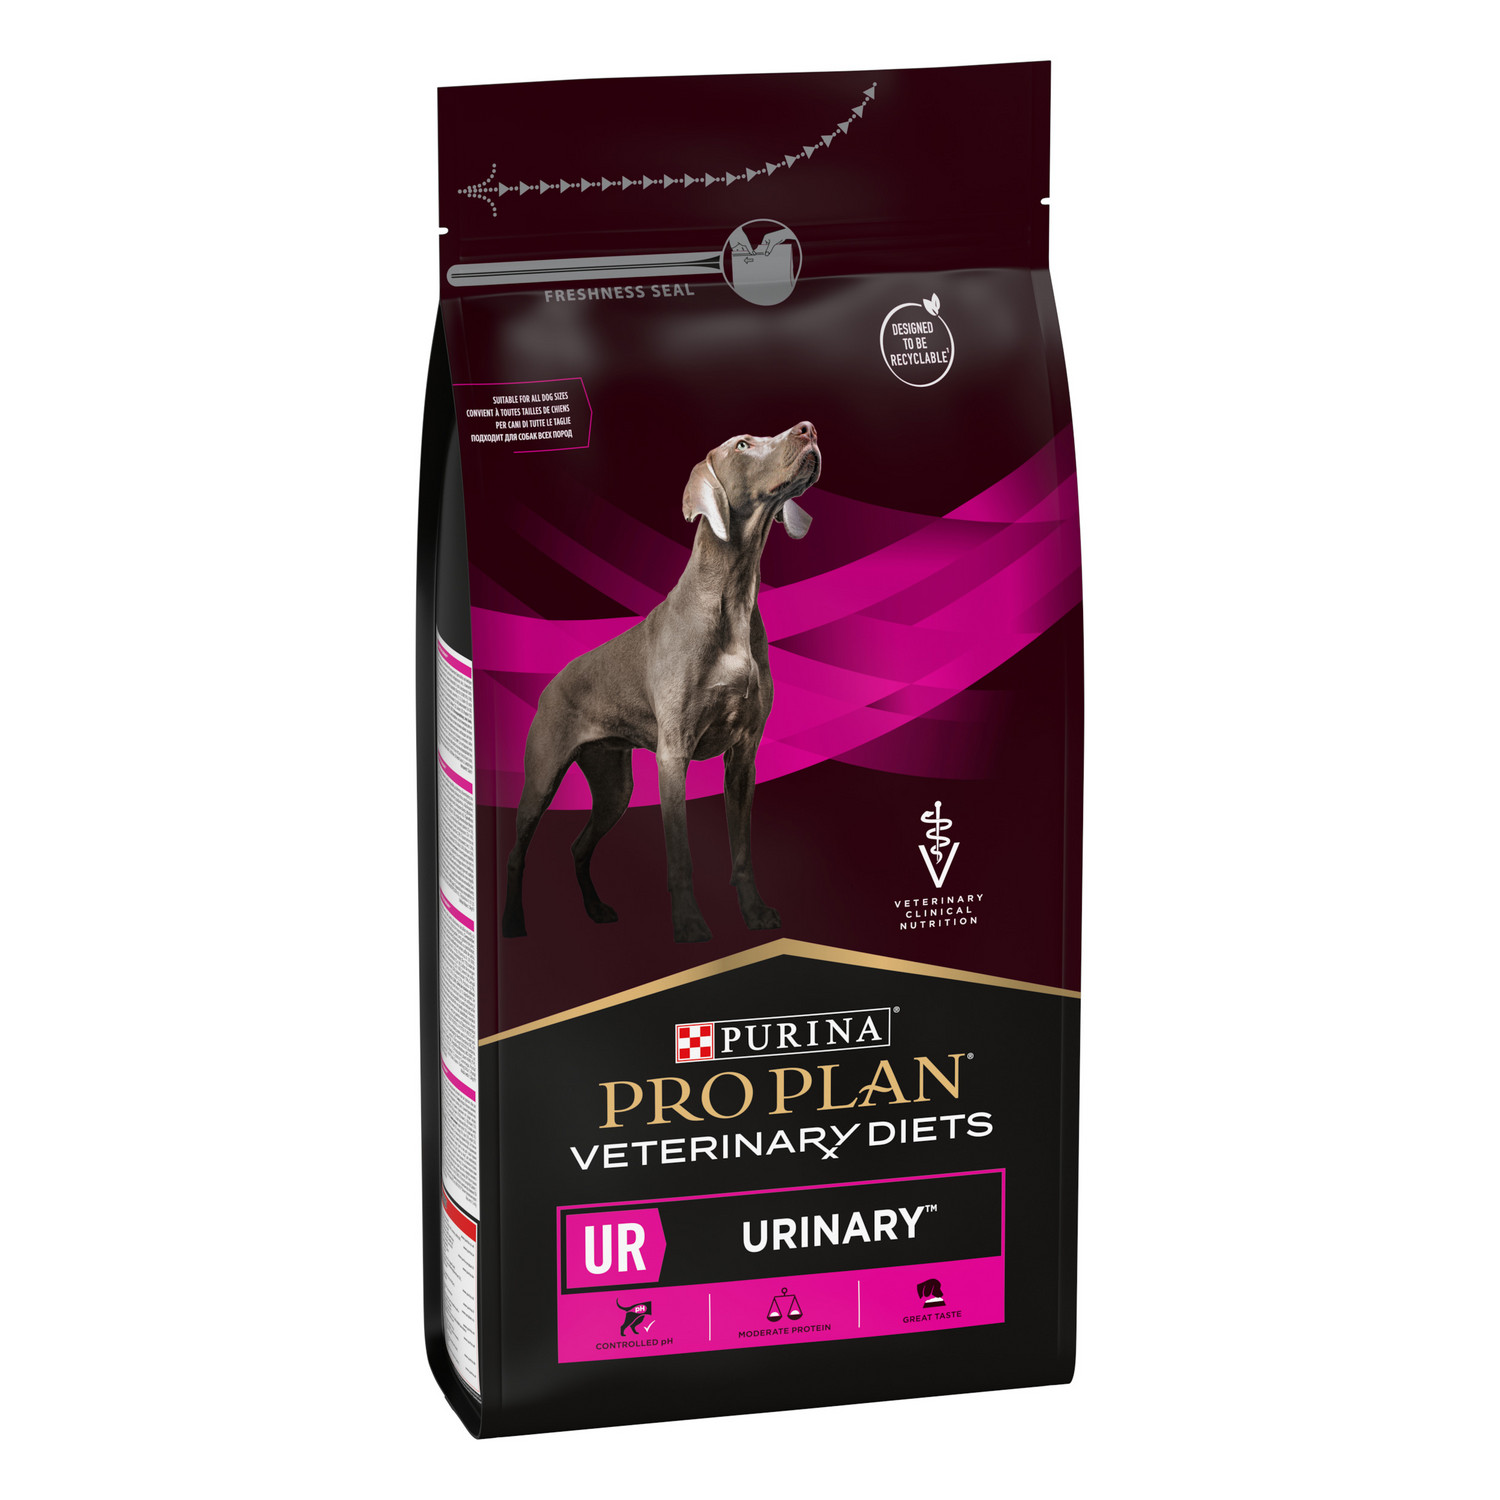 Корм для собак Purina Pro Plan Veterinary diets UR Urinary для растворения струвитных камней со свойствами подкисления мочи и низким содержанием магния 1.5кг - фото 4